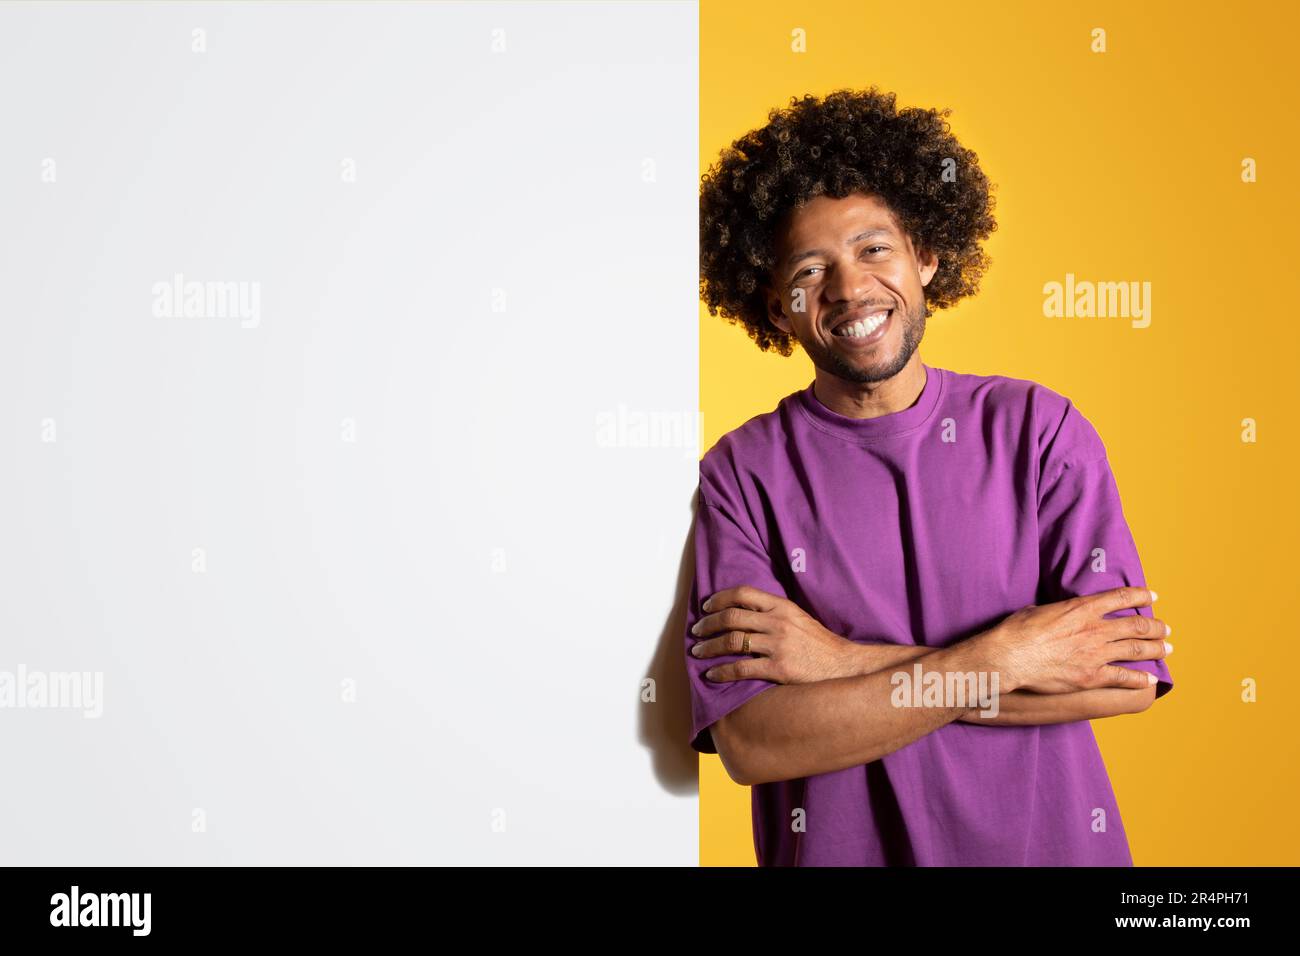 Positif mûr noir curly homme dans le t-shirt violet avec les bras croisés sur la poitrine avec banneur avec espace vide Banque D'Images